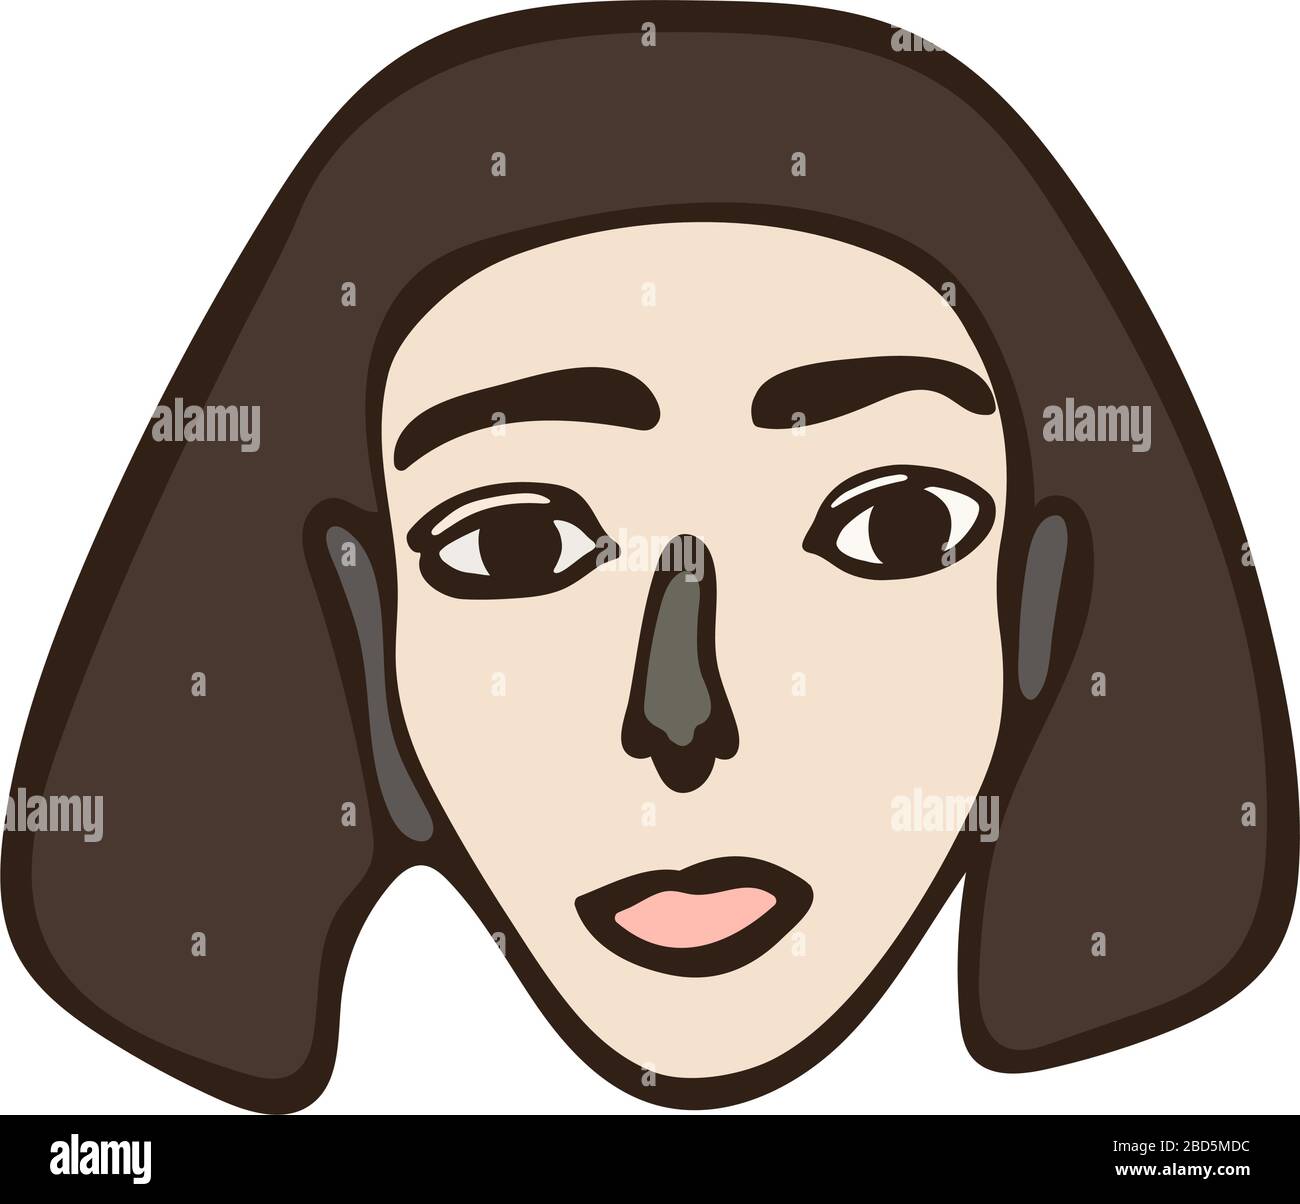 Minimalistisches linear isoliertes Frauenporträt. Braunes Mädchen, weißes Gesicht mit dunklen Augen. Einfache Gesichtszüge. Skandinavische primitive Grafik Stock Vektor